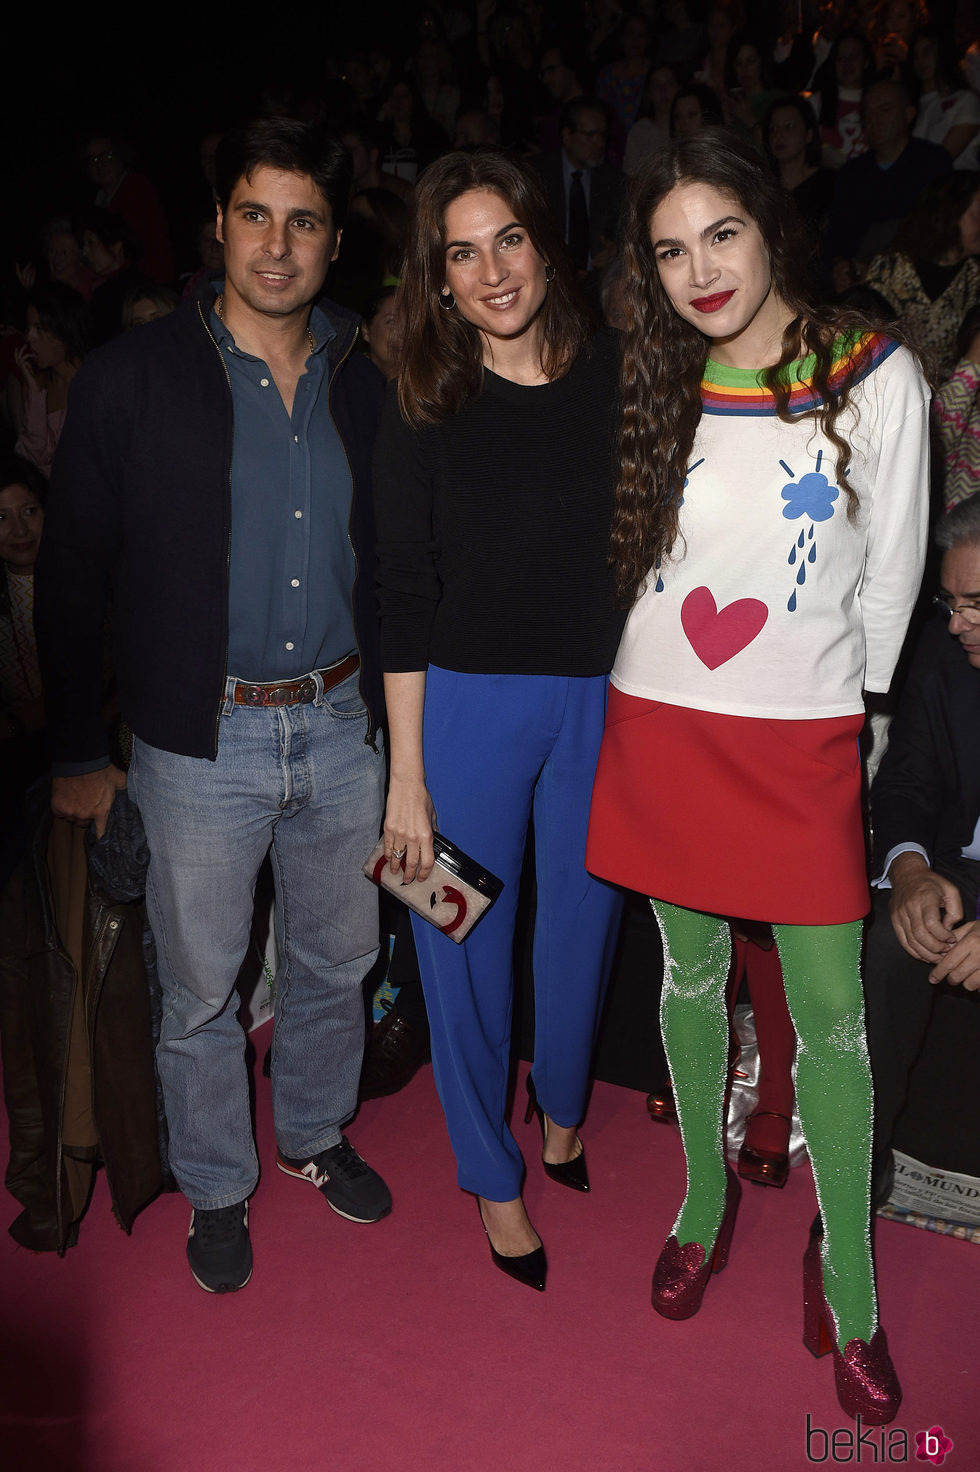 Fran Rivera, Lourdes Montes y Cósima Ramírez en el front row del desfile de Ágatha Ruiz de la Prada en Madrid Fashion Week otoño/invierno 2017/2018